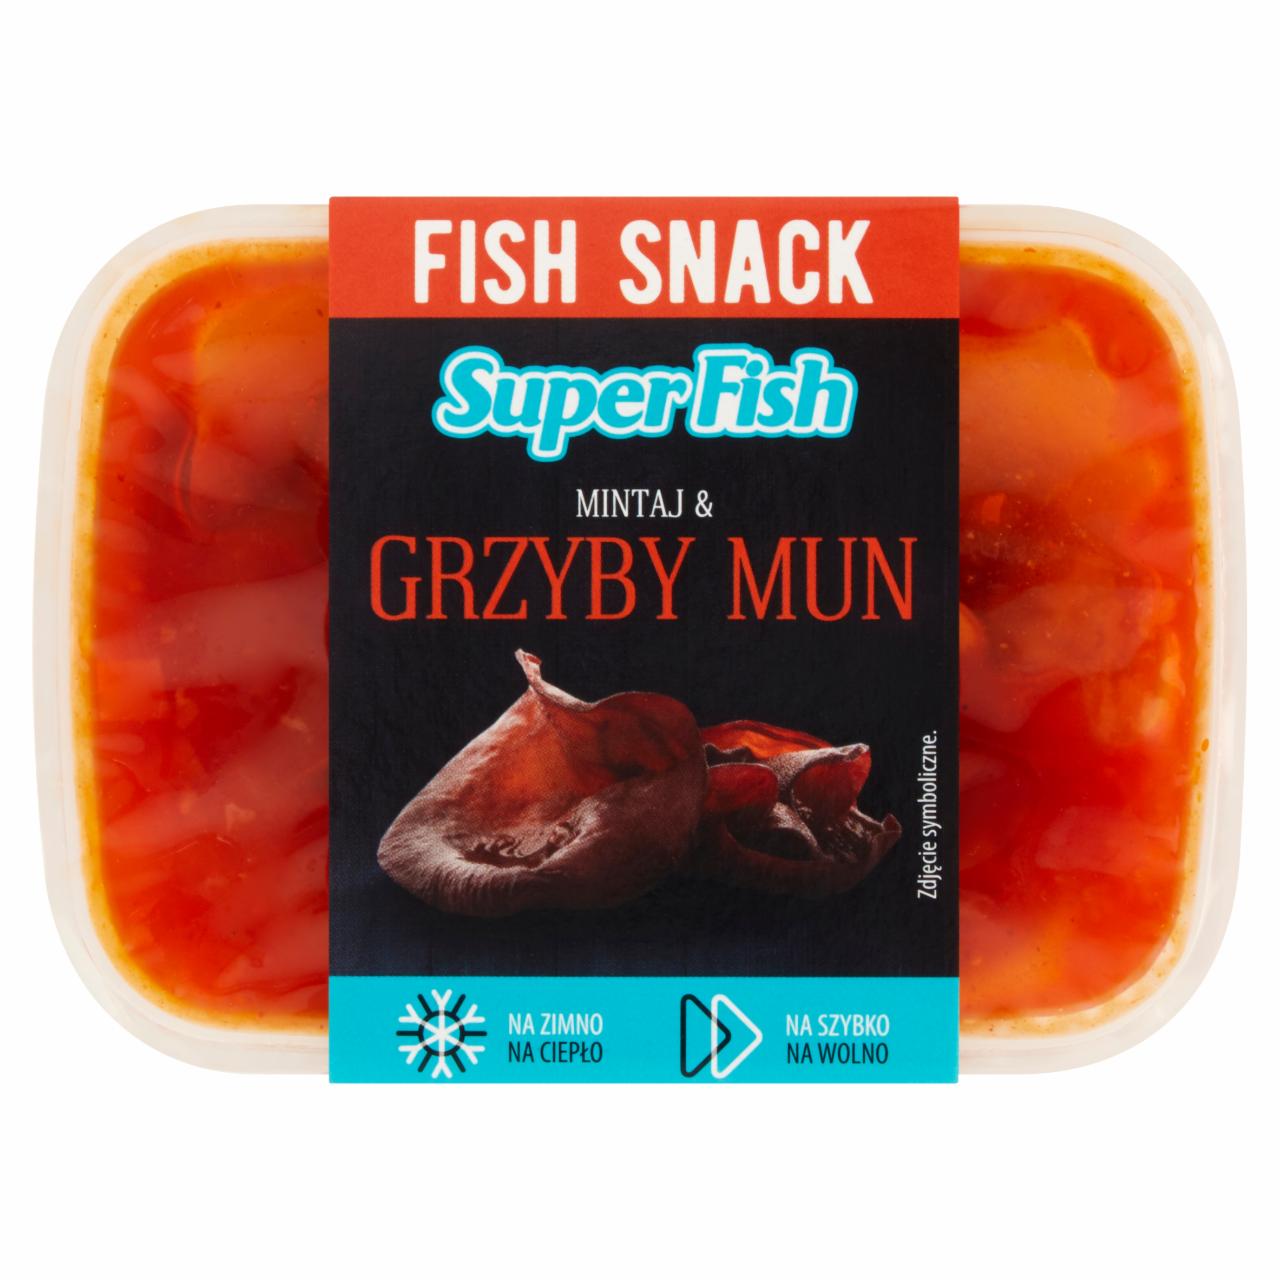 Zdjęcia - SuperFish Fish Snack Mintaj & grzyby mun 150 g